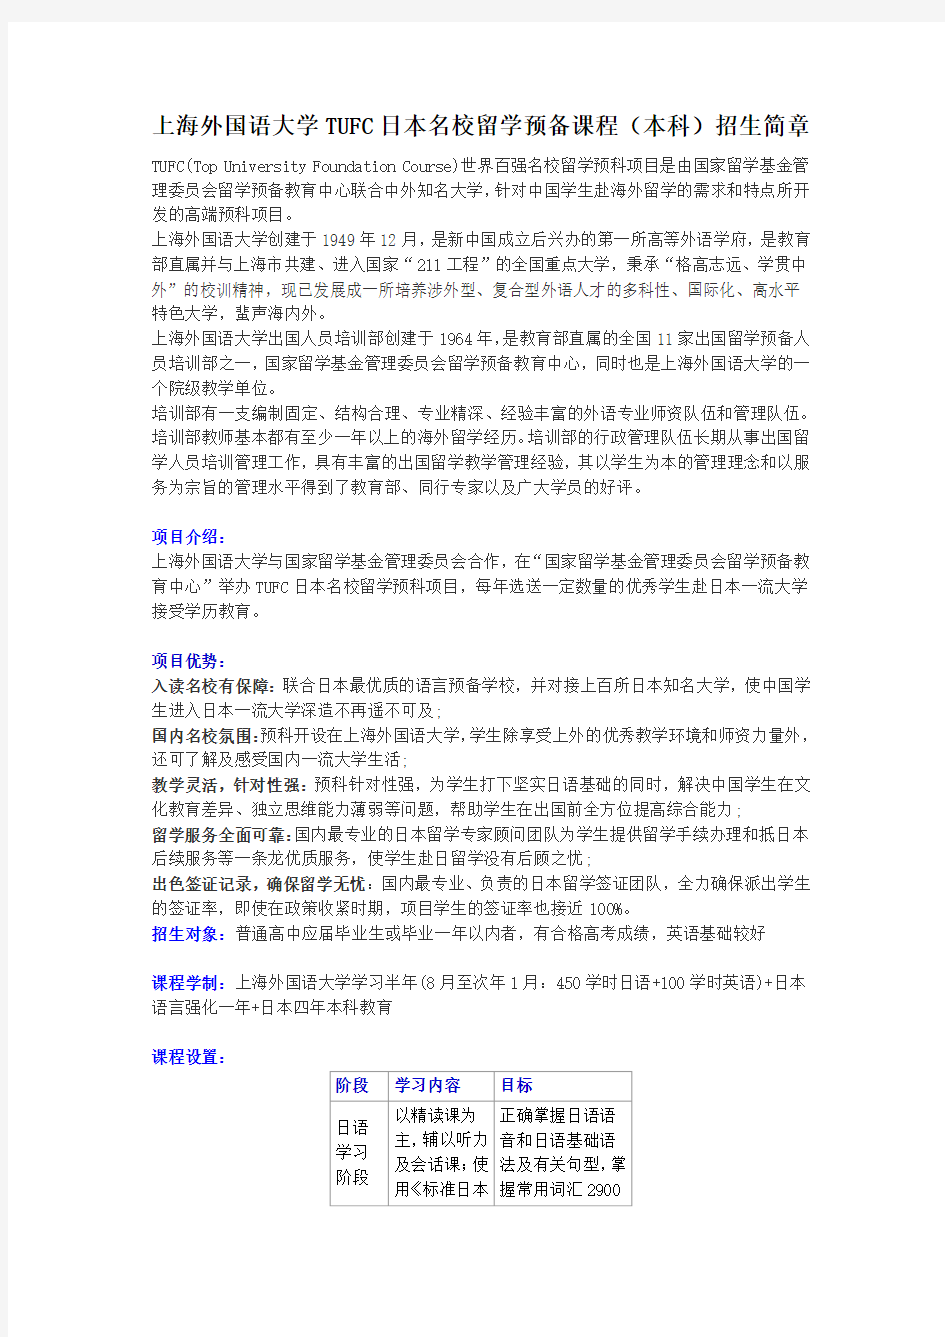 上海外国语大学TUFC日本名校留学预备课程(本科)招生简章